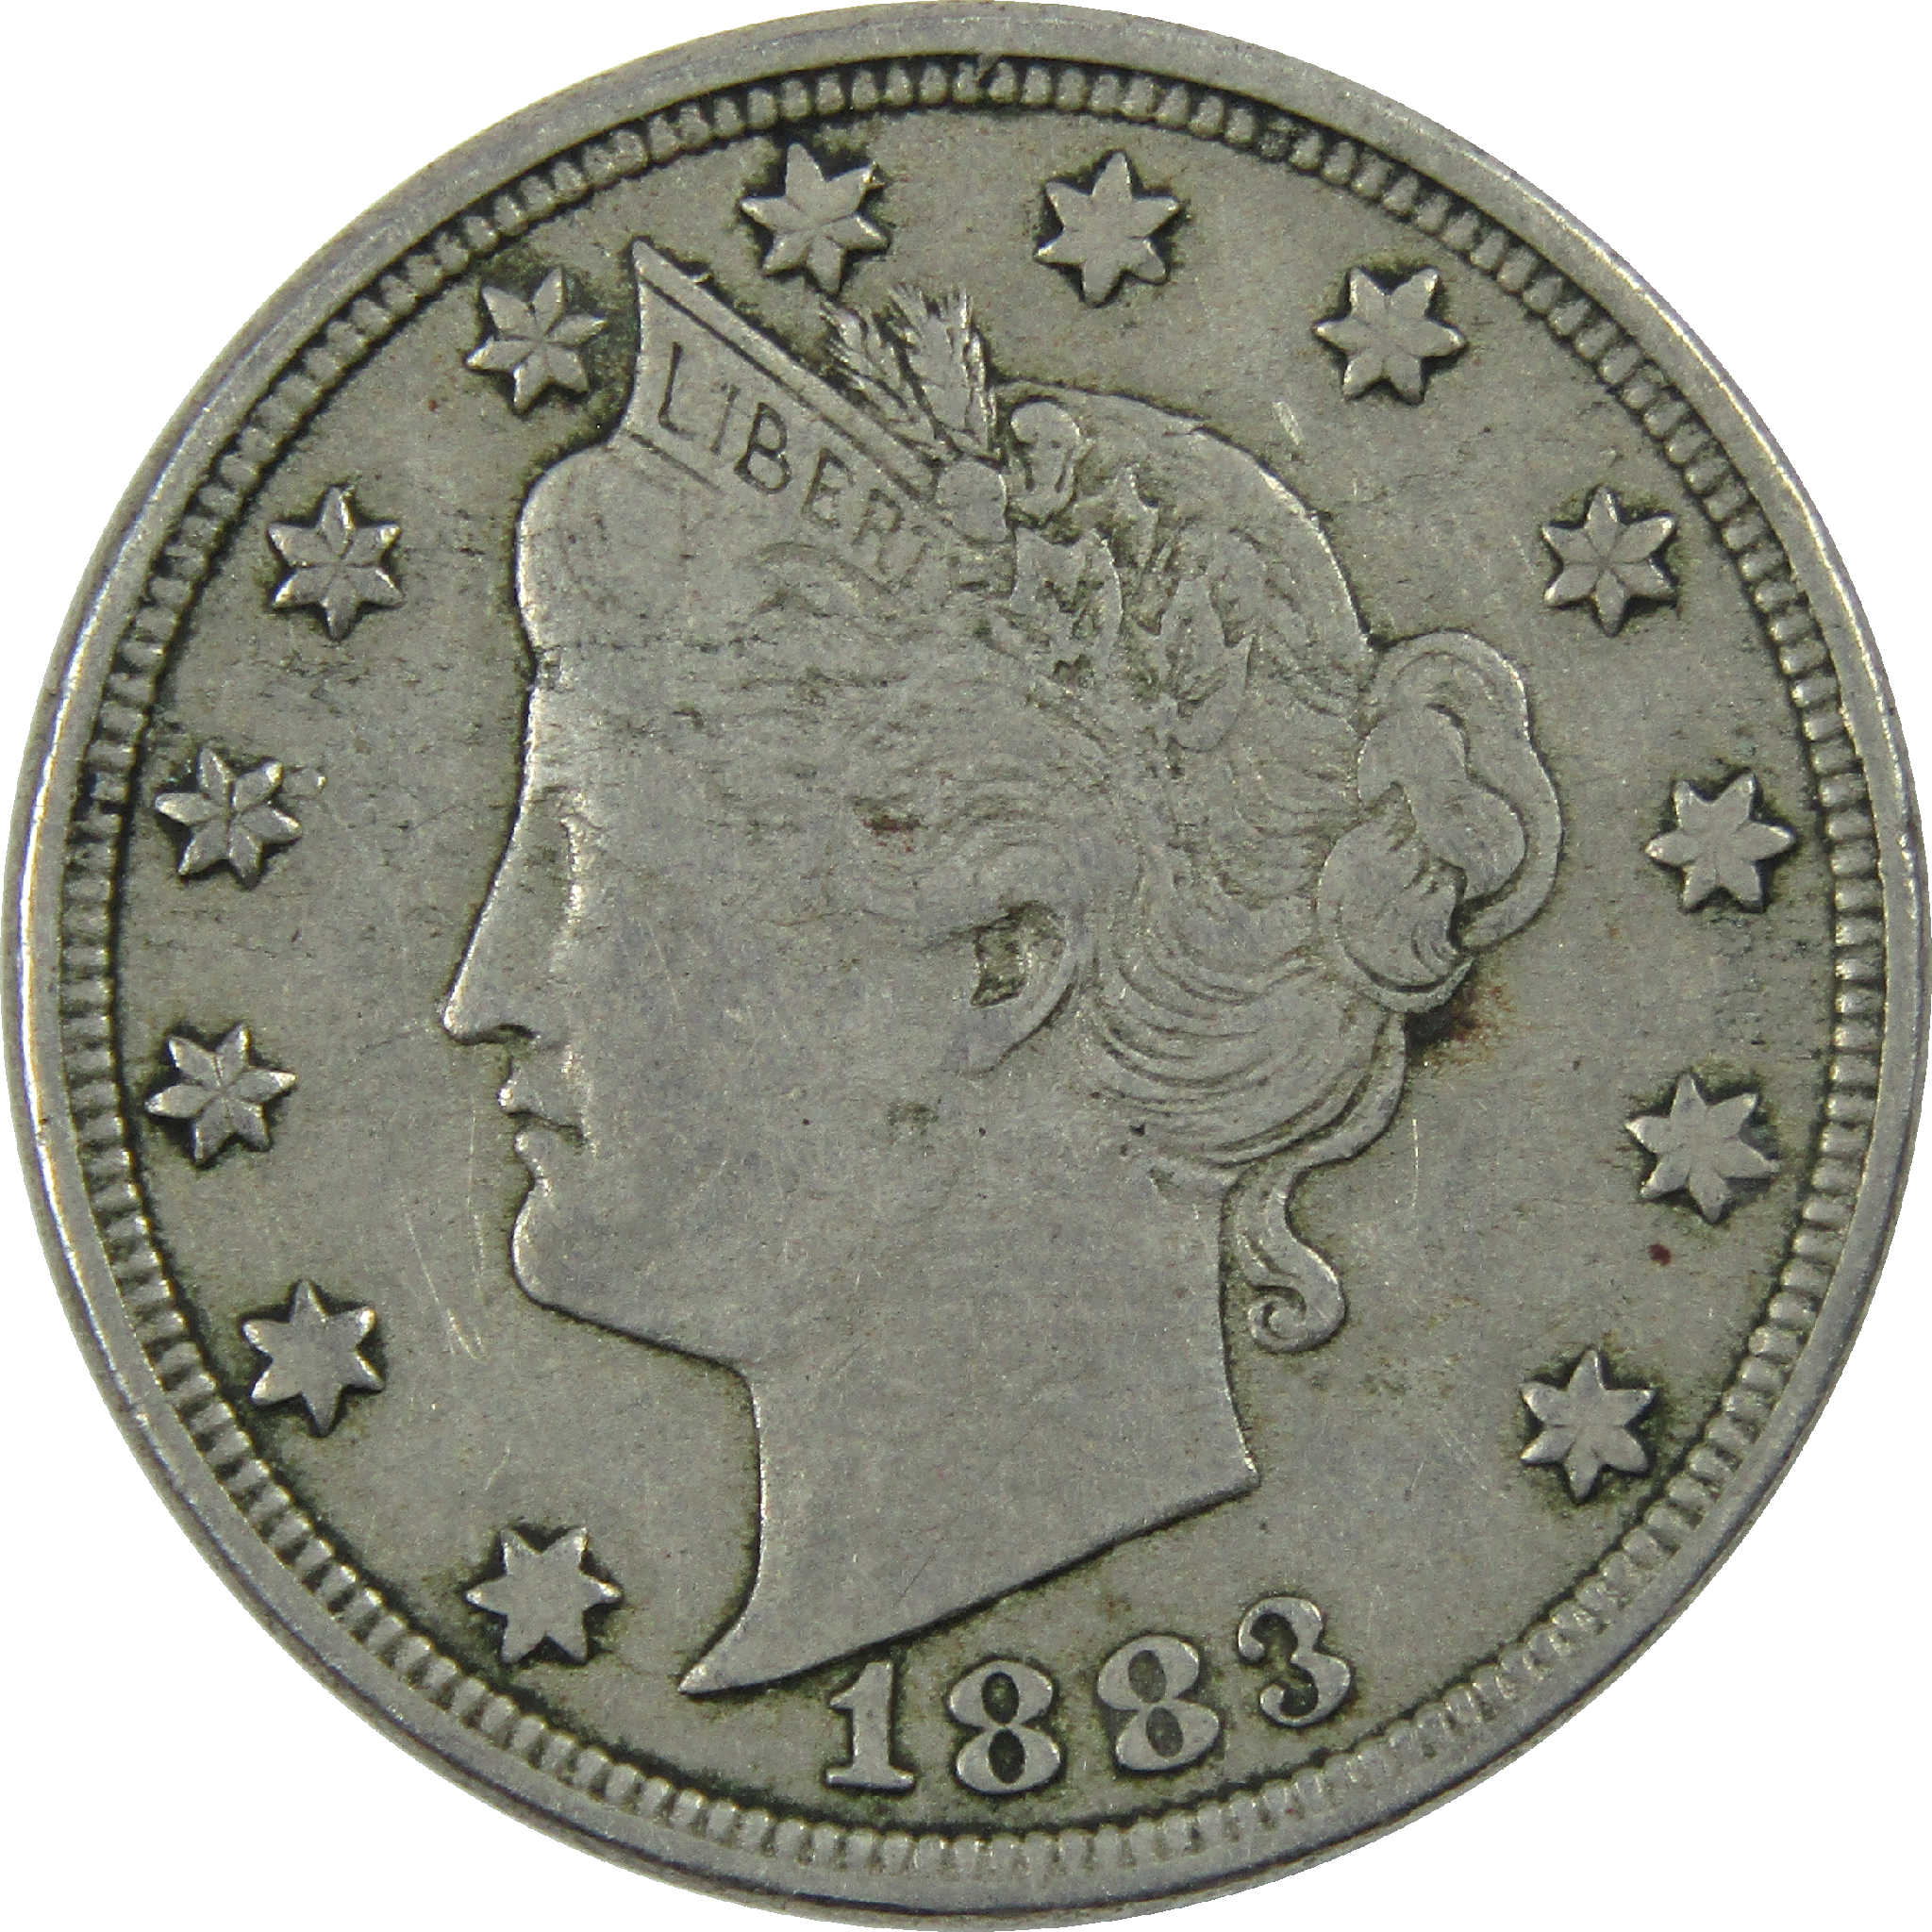 1883 No Cents Liberty Head V Nickel VF Very Fine 5c Coin SKU:I12148